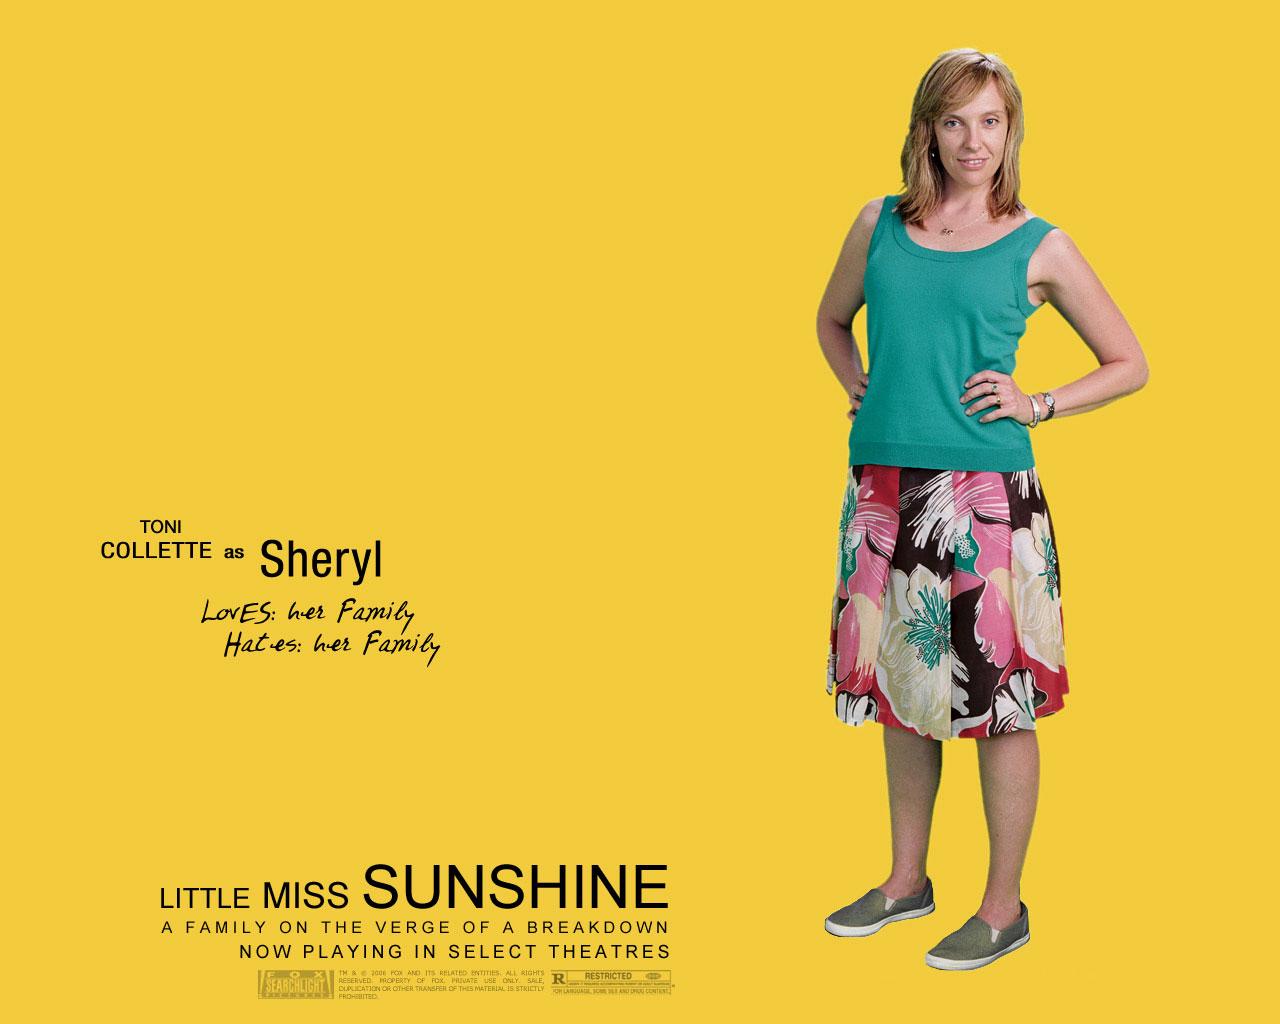 Little Miss Sunshine Wallpaper #2 1280 x 1024 